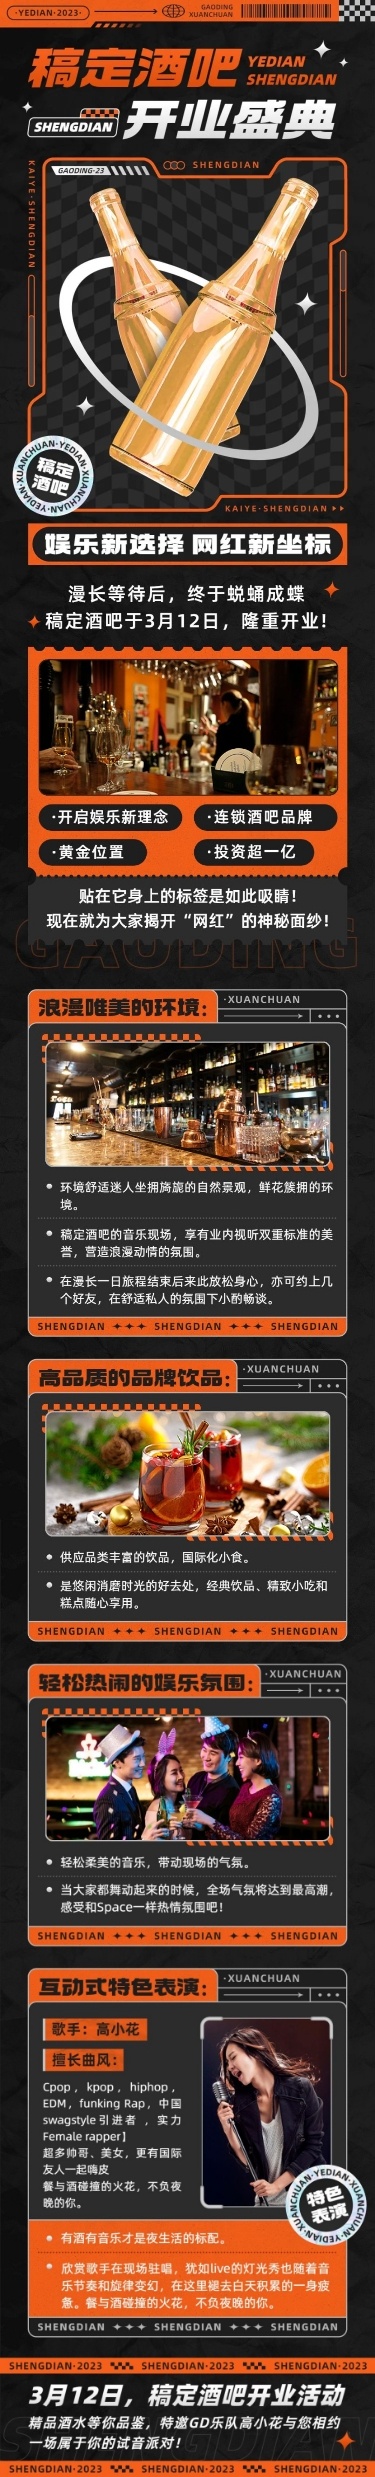 夜店酒吧开业活动宣传微信文章长图